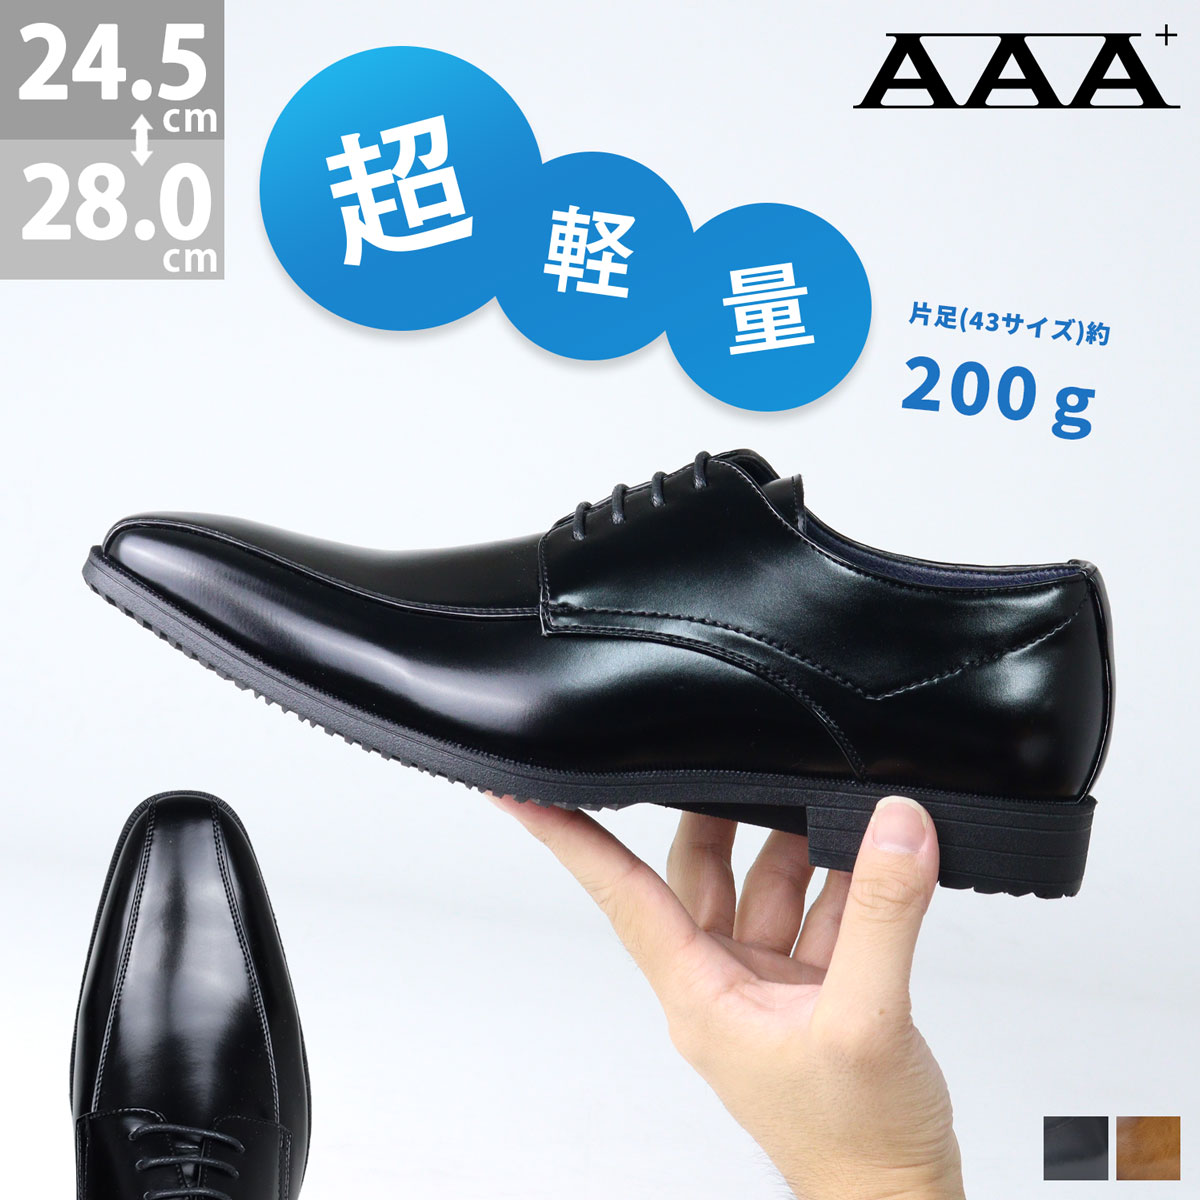 【楽天市場】ビジネスシューズ 超軽量 革靴 コインローファー 